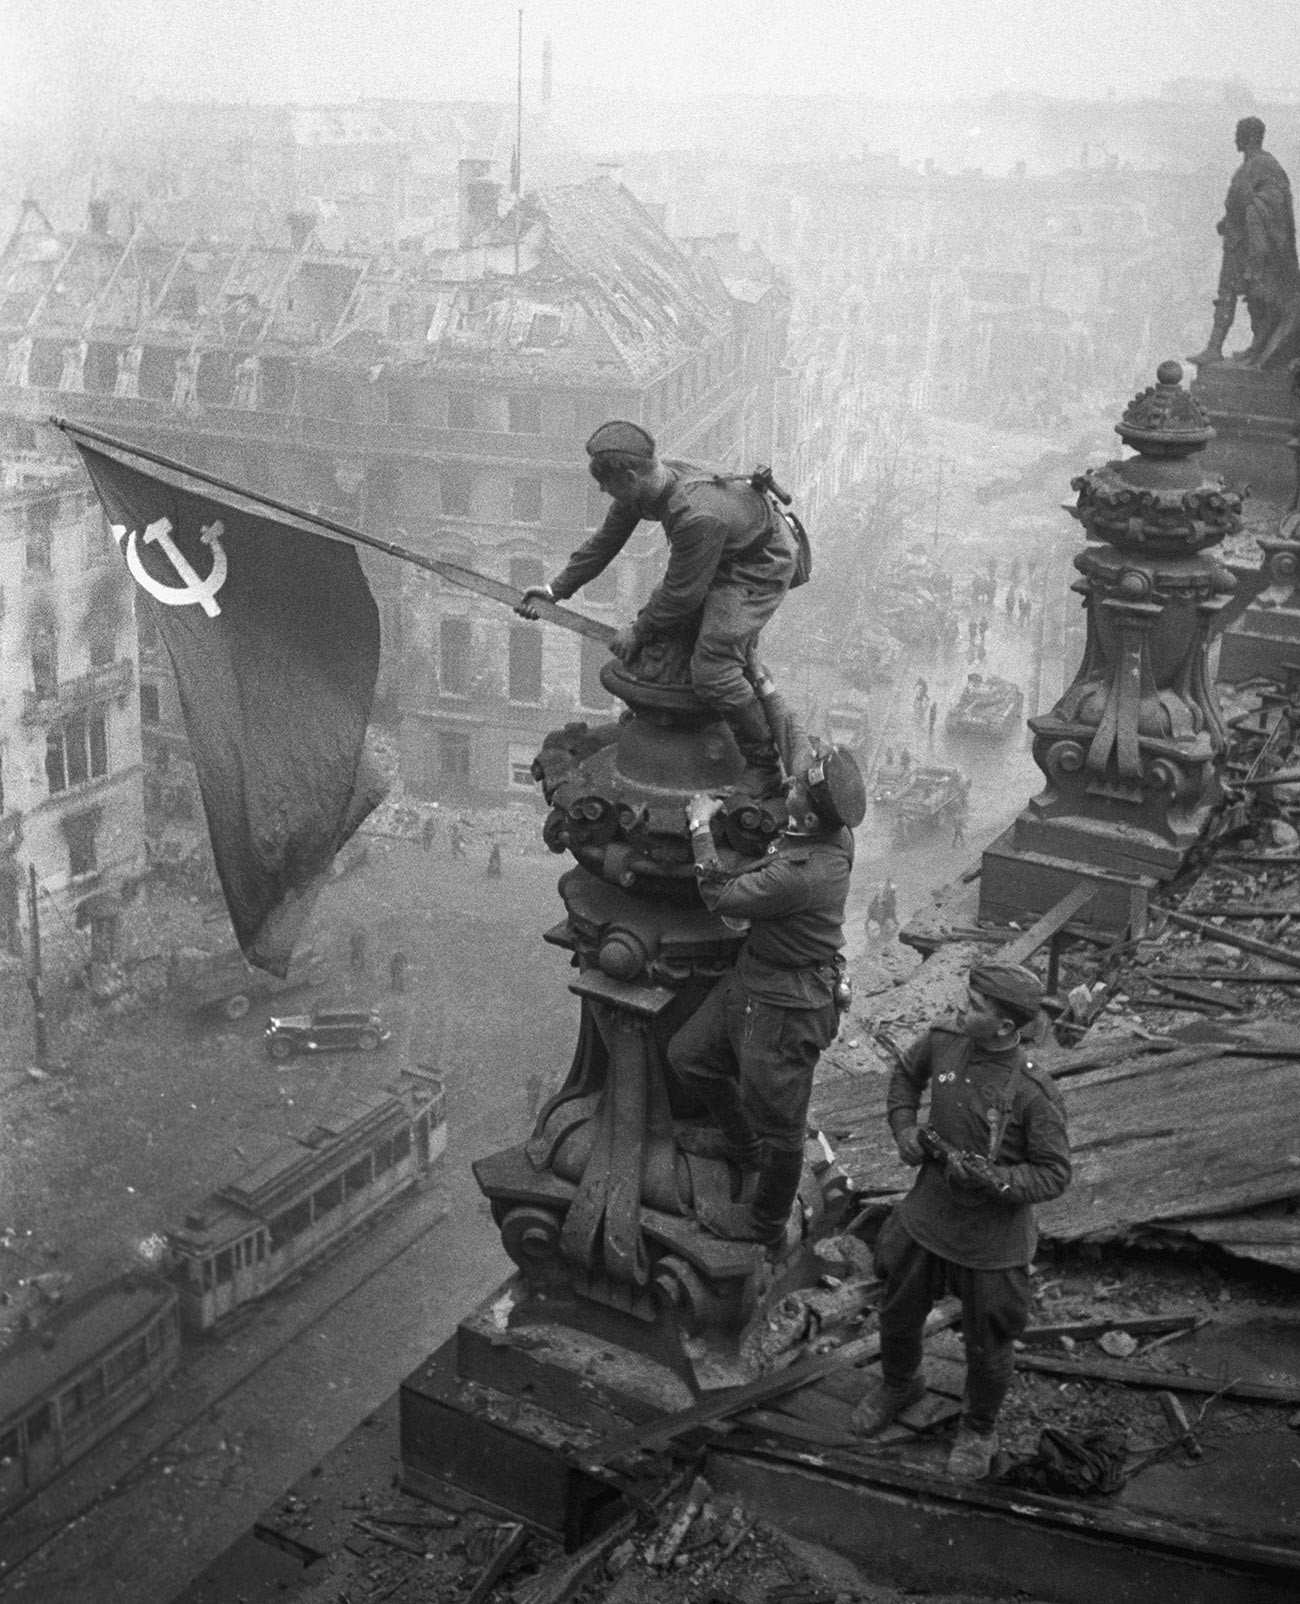 Bendera merah dikibarkan di atas Gedung Reichstag di Berlin, Jerman.